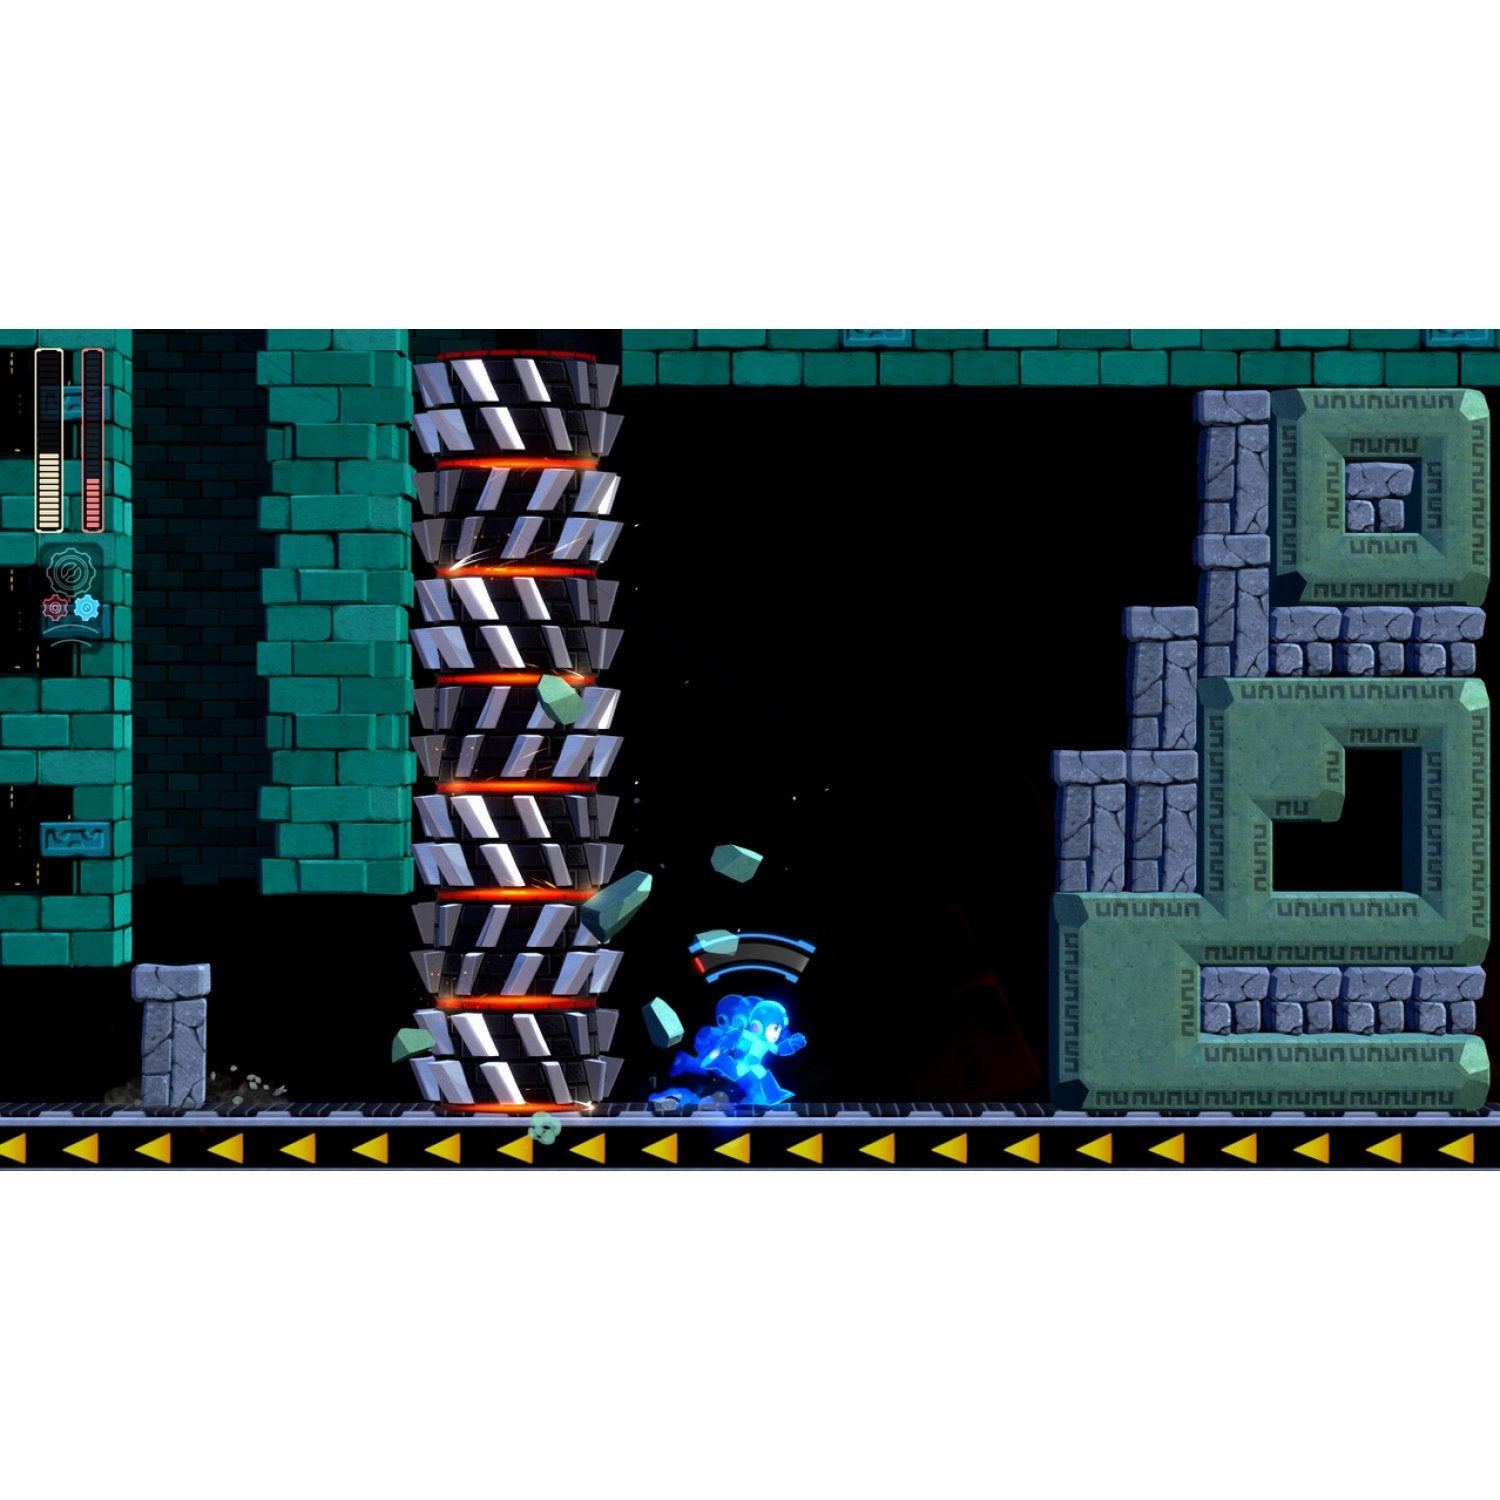 PS4 Mega Man 11